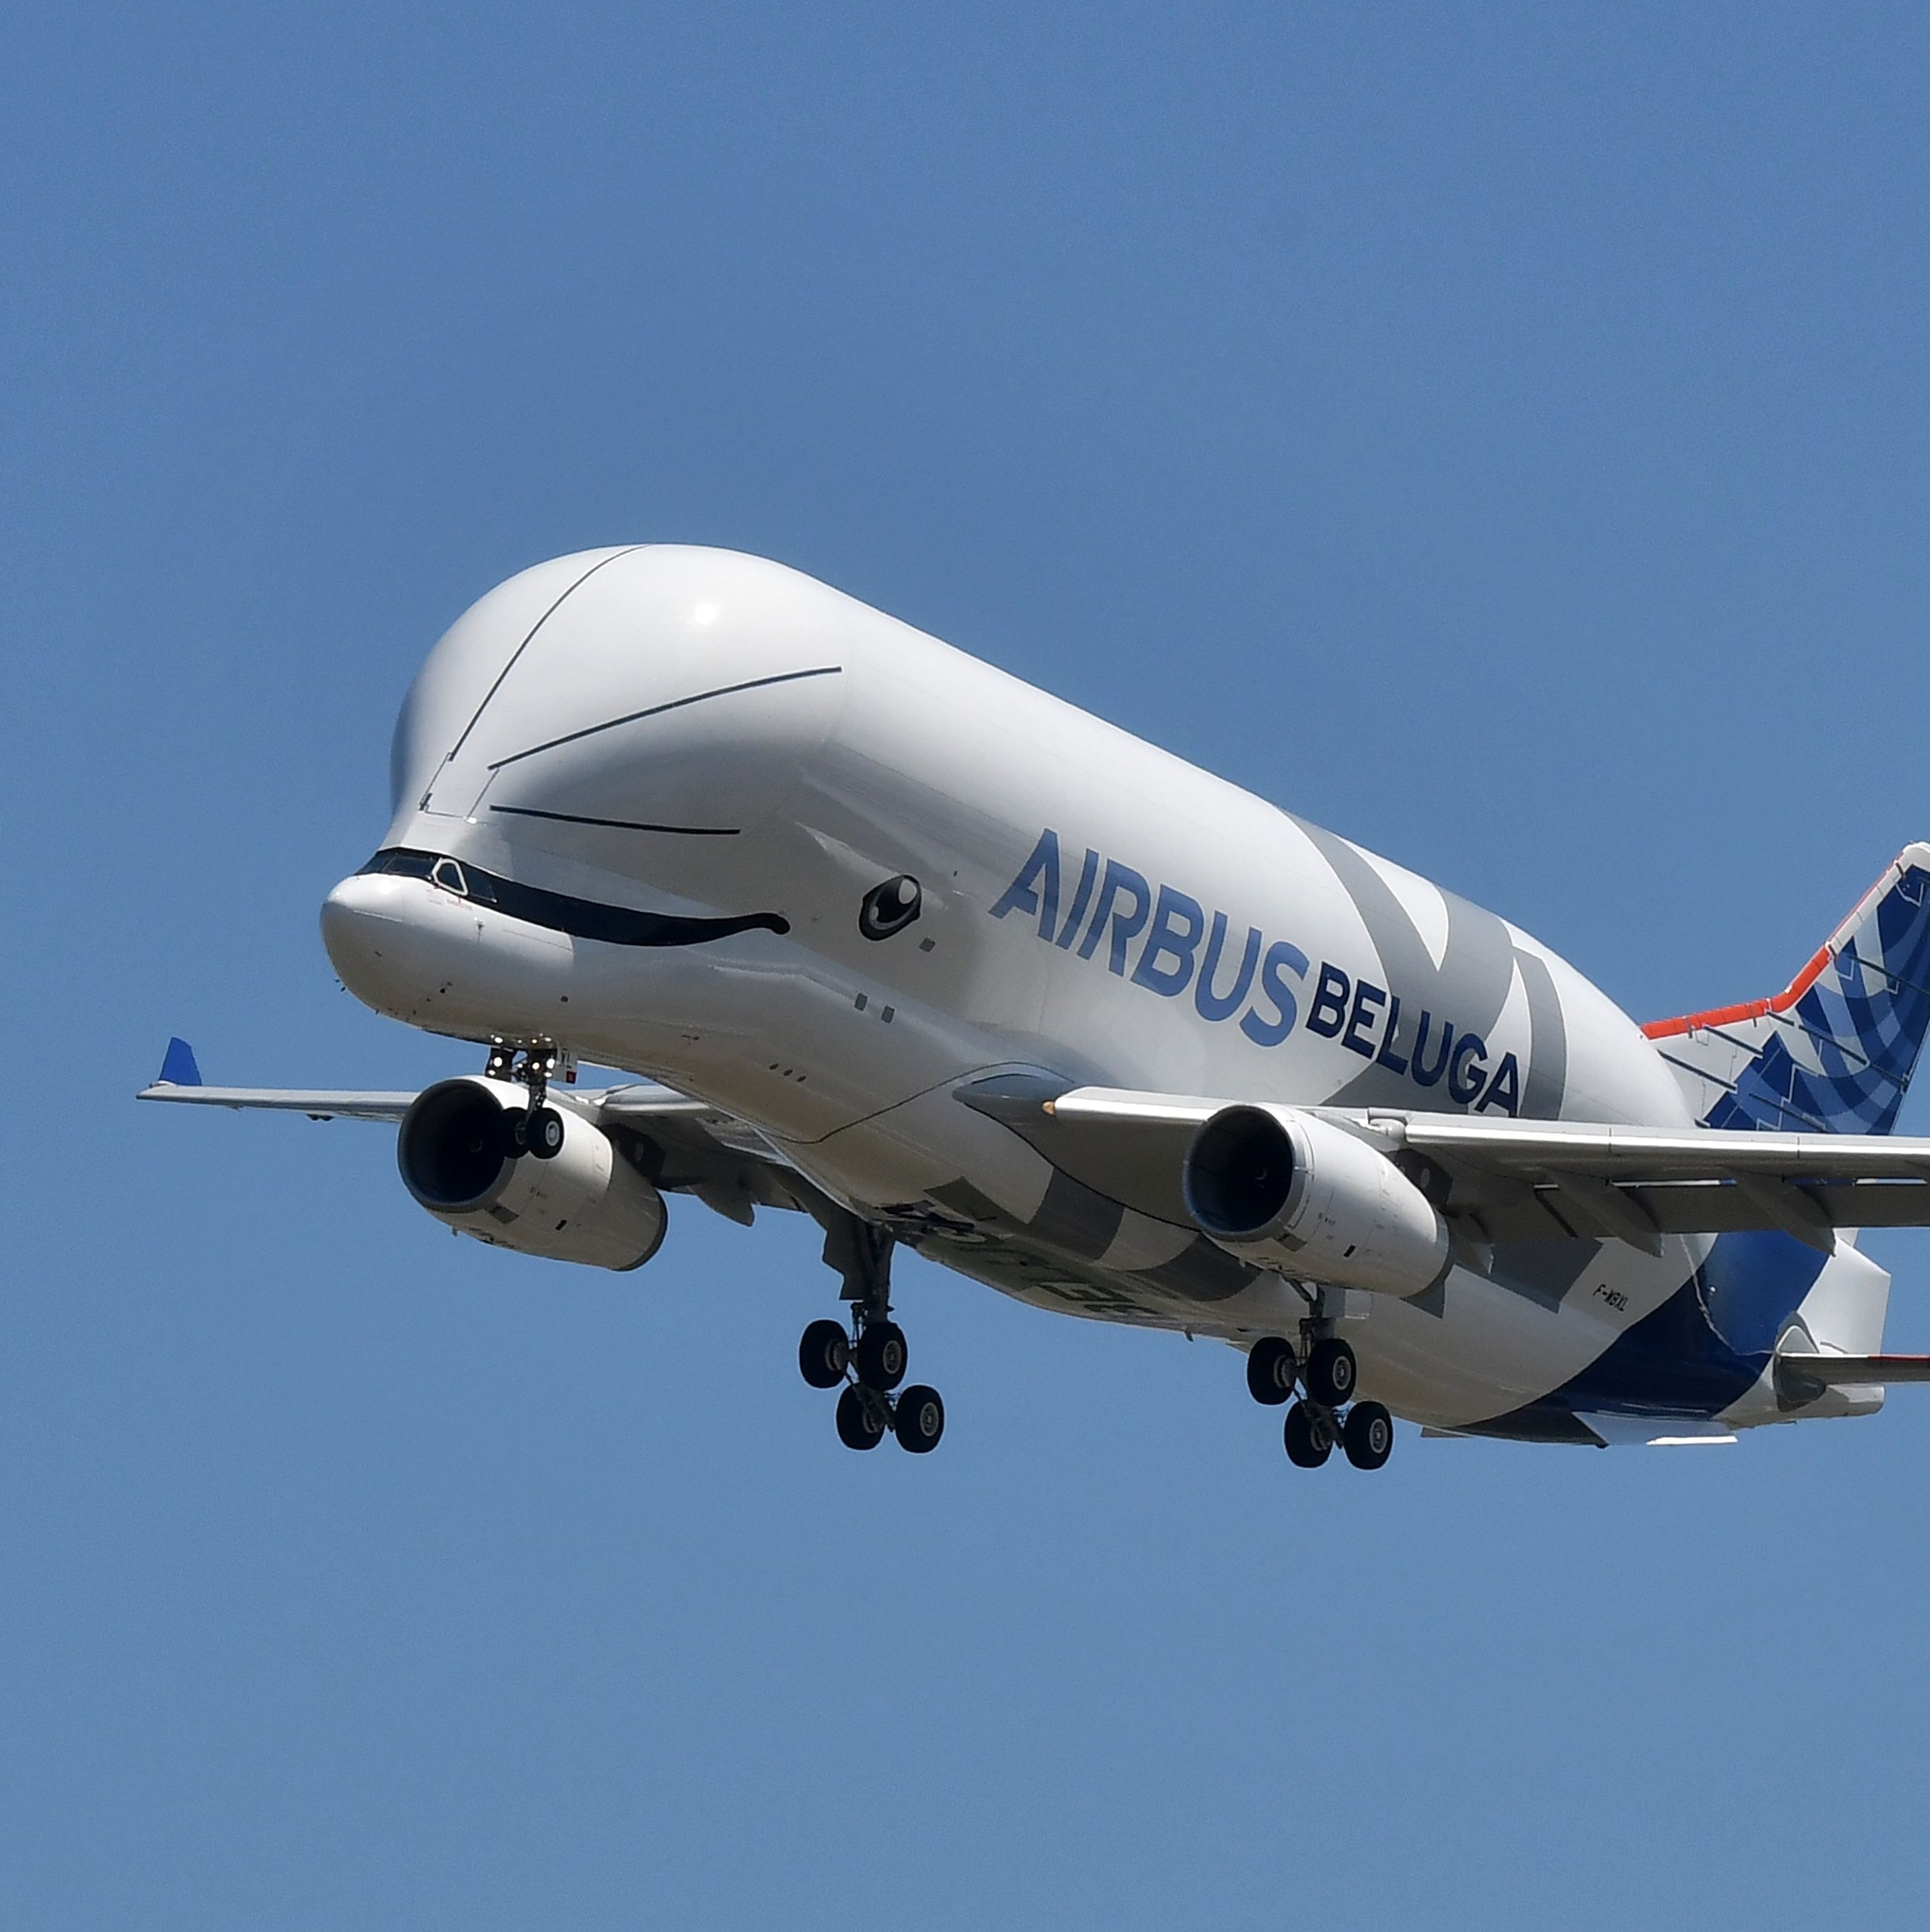 Airbus Beluga XL: avião conhecido como baleia voadora começa a